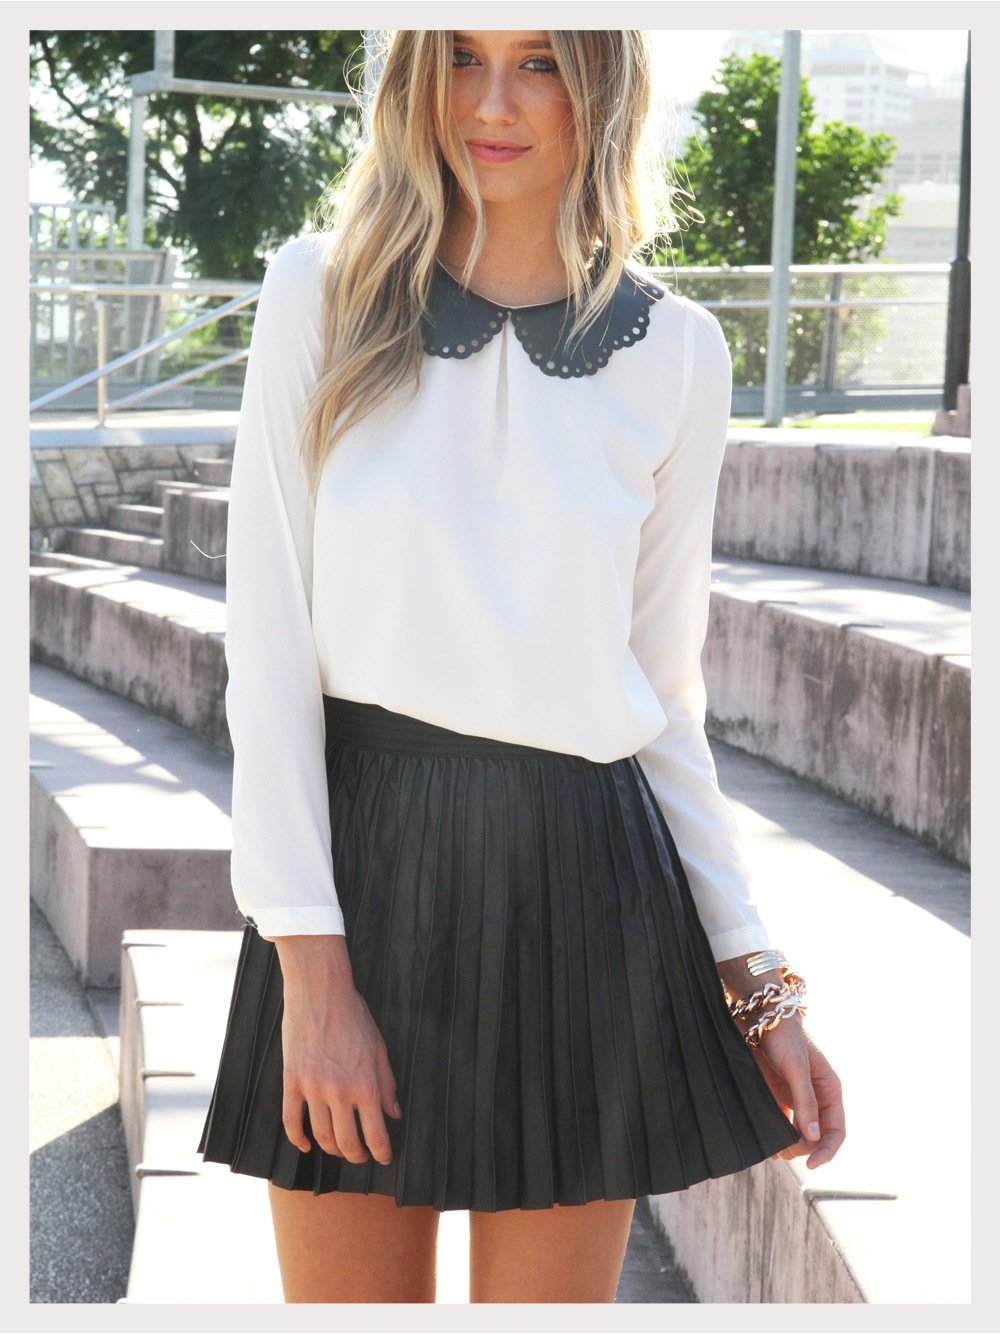 Черная кофта и черная юбка. Белая блузка и черная юбка. Короткая юбка. Белая блузка и короткая юбка. Черная блузка с юбкой.